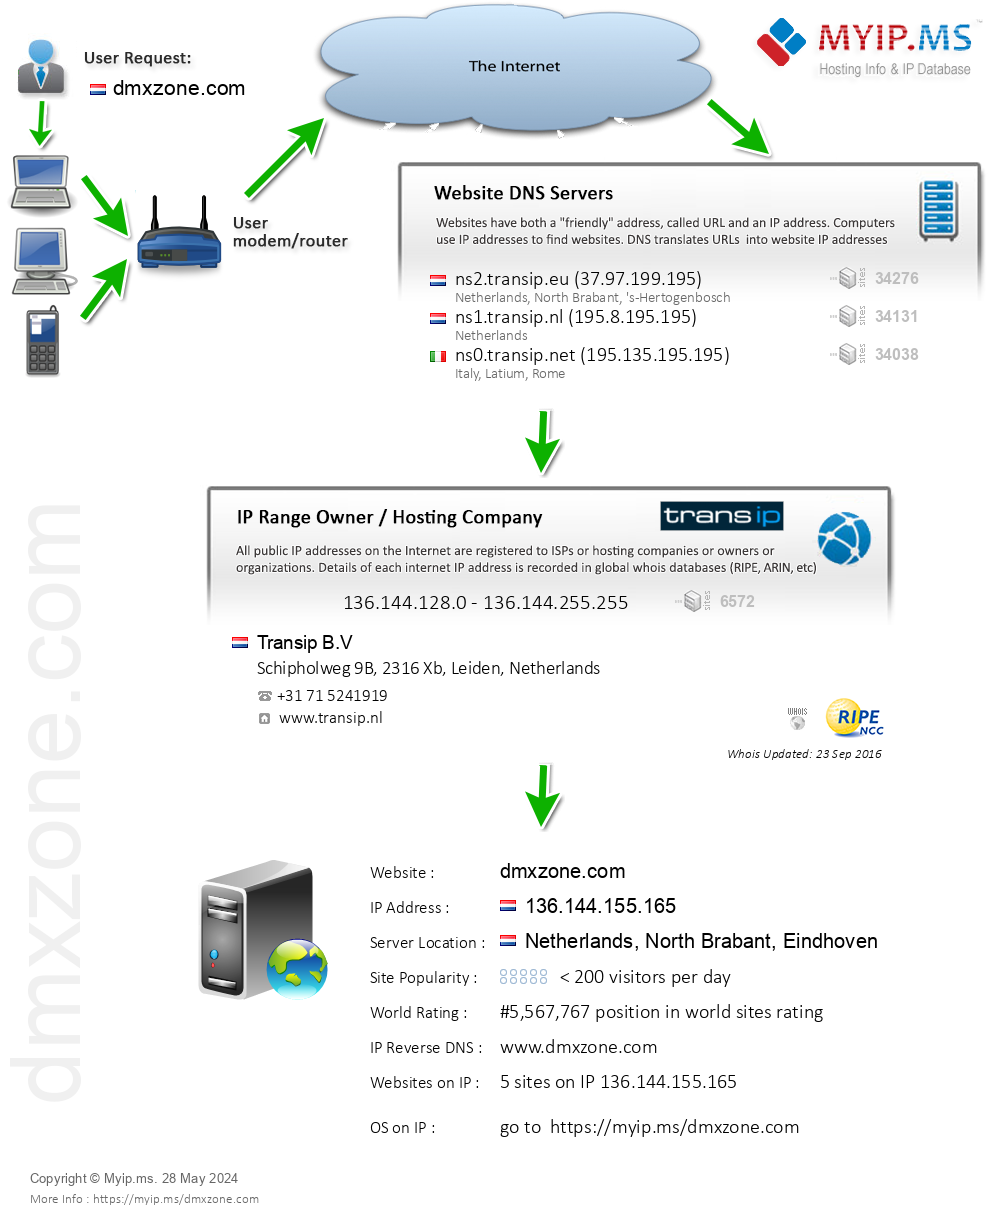 Dmxzone.com - Website Hosting Visual IP Diagram